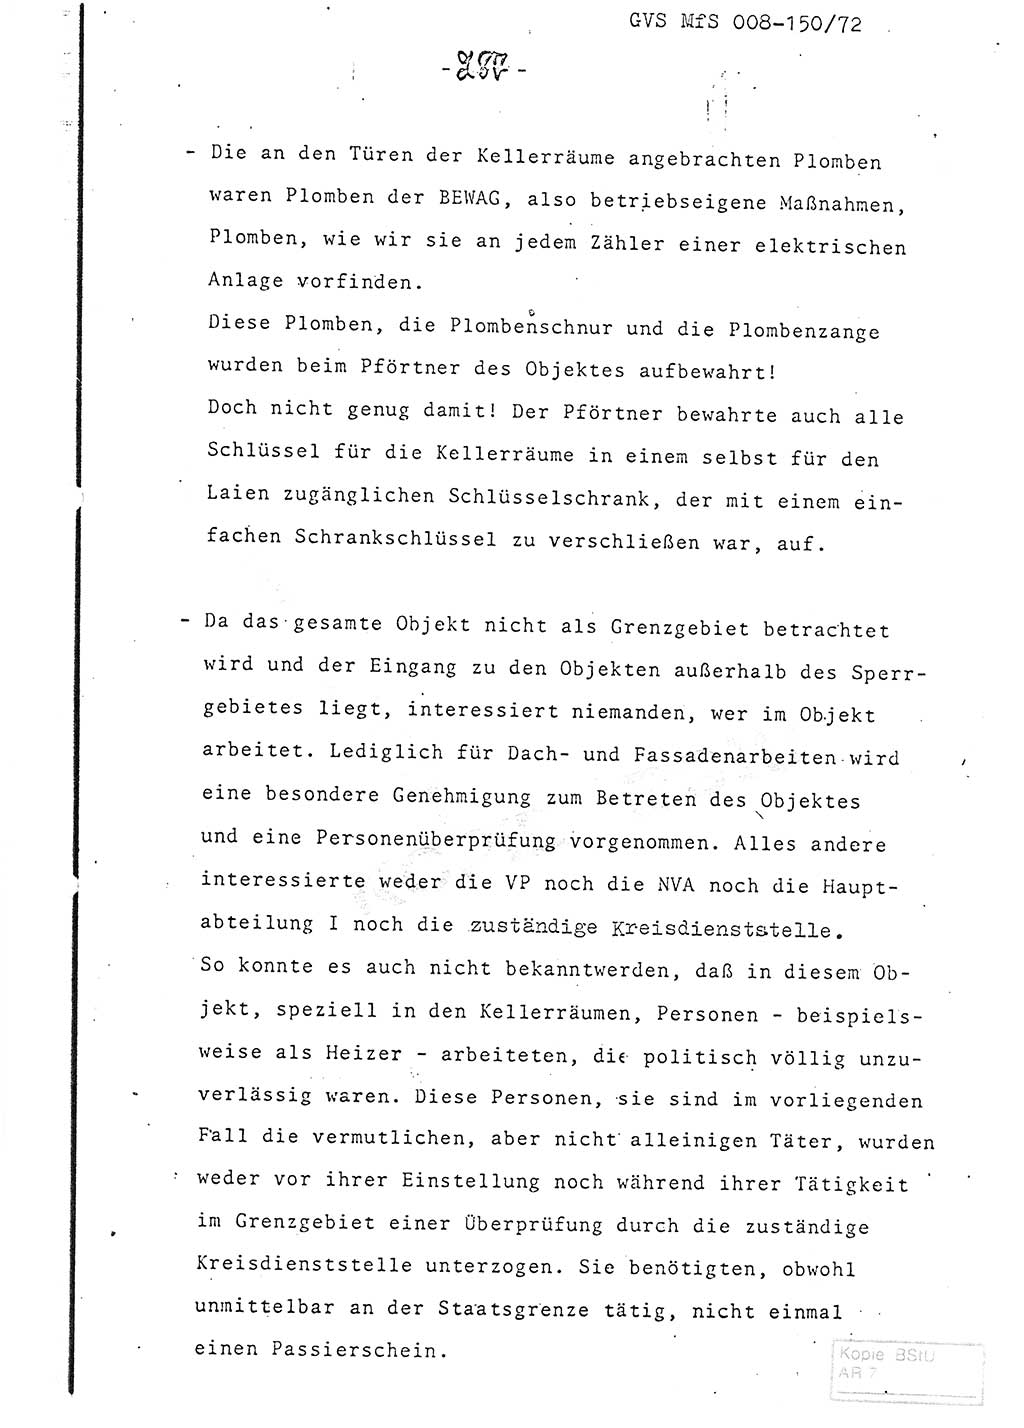 Referat (Entwurf) des Genossen Minister (Generaloberst Erich Mielke) auf der Dienstkonferenz 1972, Ministerium für Staatssicherheit (MfS) [Deutsche Demokratische Republik (DDR)], Der Minister, Geheime Verschlußsache (GVS) 008-150/72, Berlin 25.2.1972, Seite 287 (Ref. Entw. DK MfS DDR Min. GVS 008-150/72 1972, S. 287)